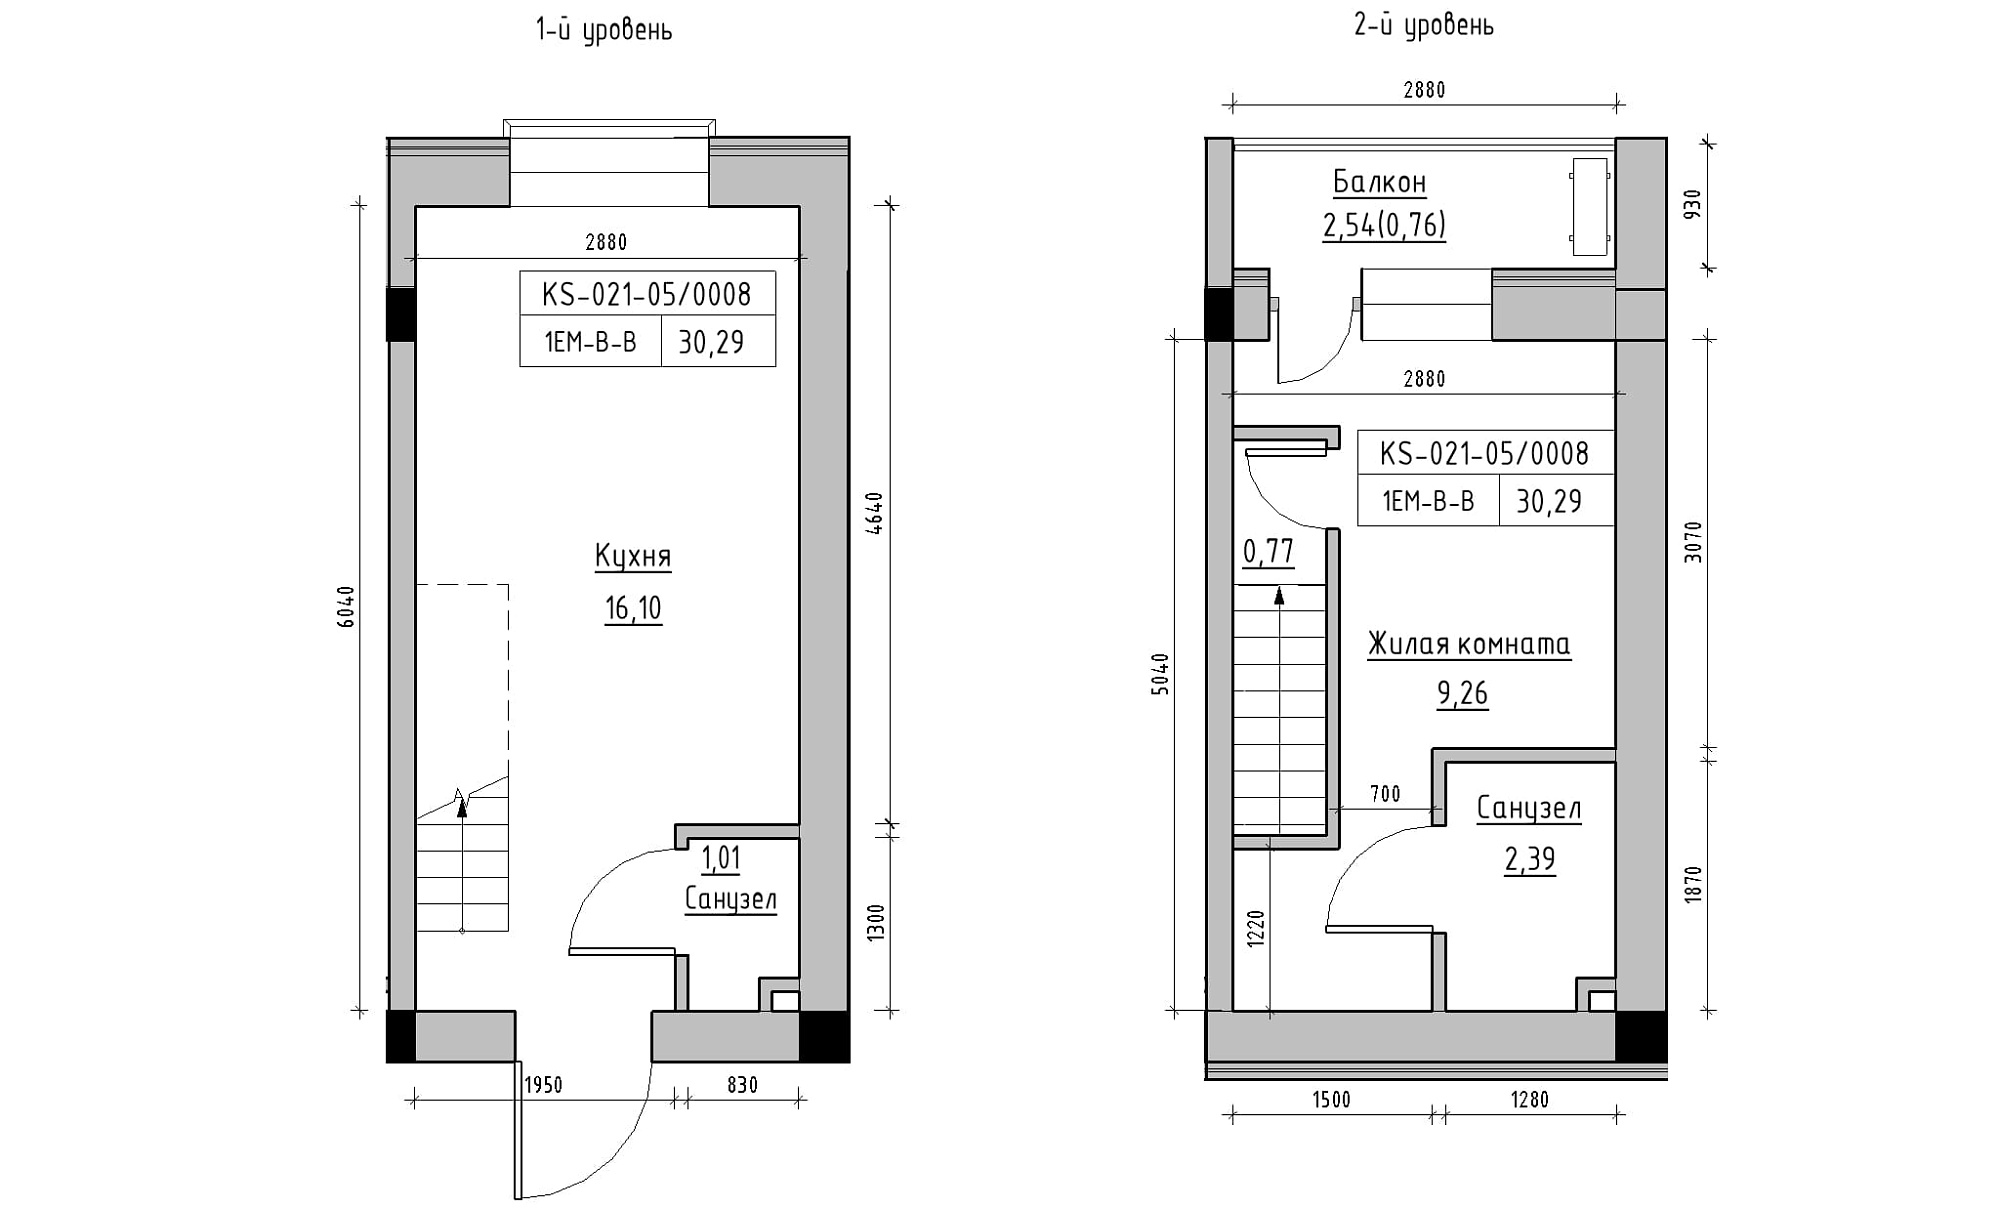 Planning 2-lvl flats area 30.29m2, KS-021-05/0008.